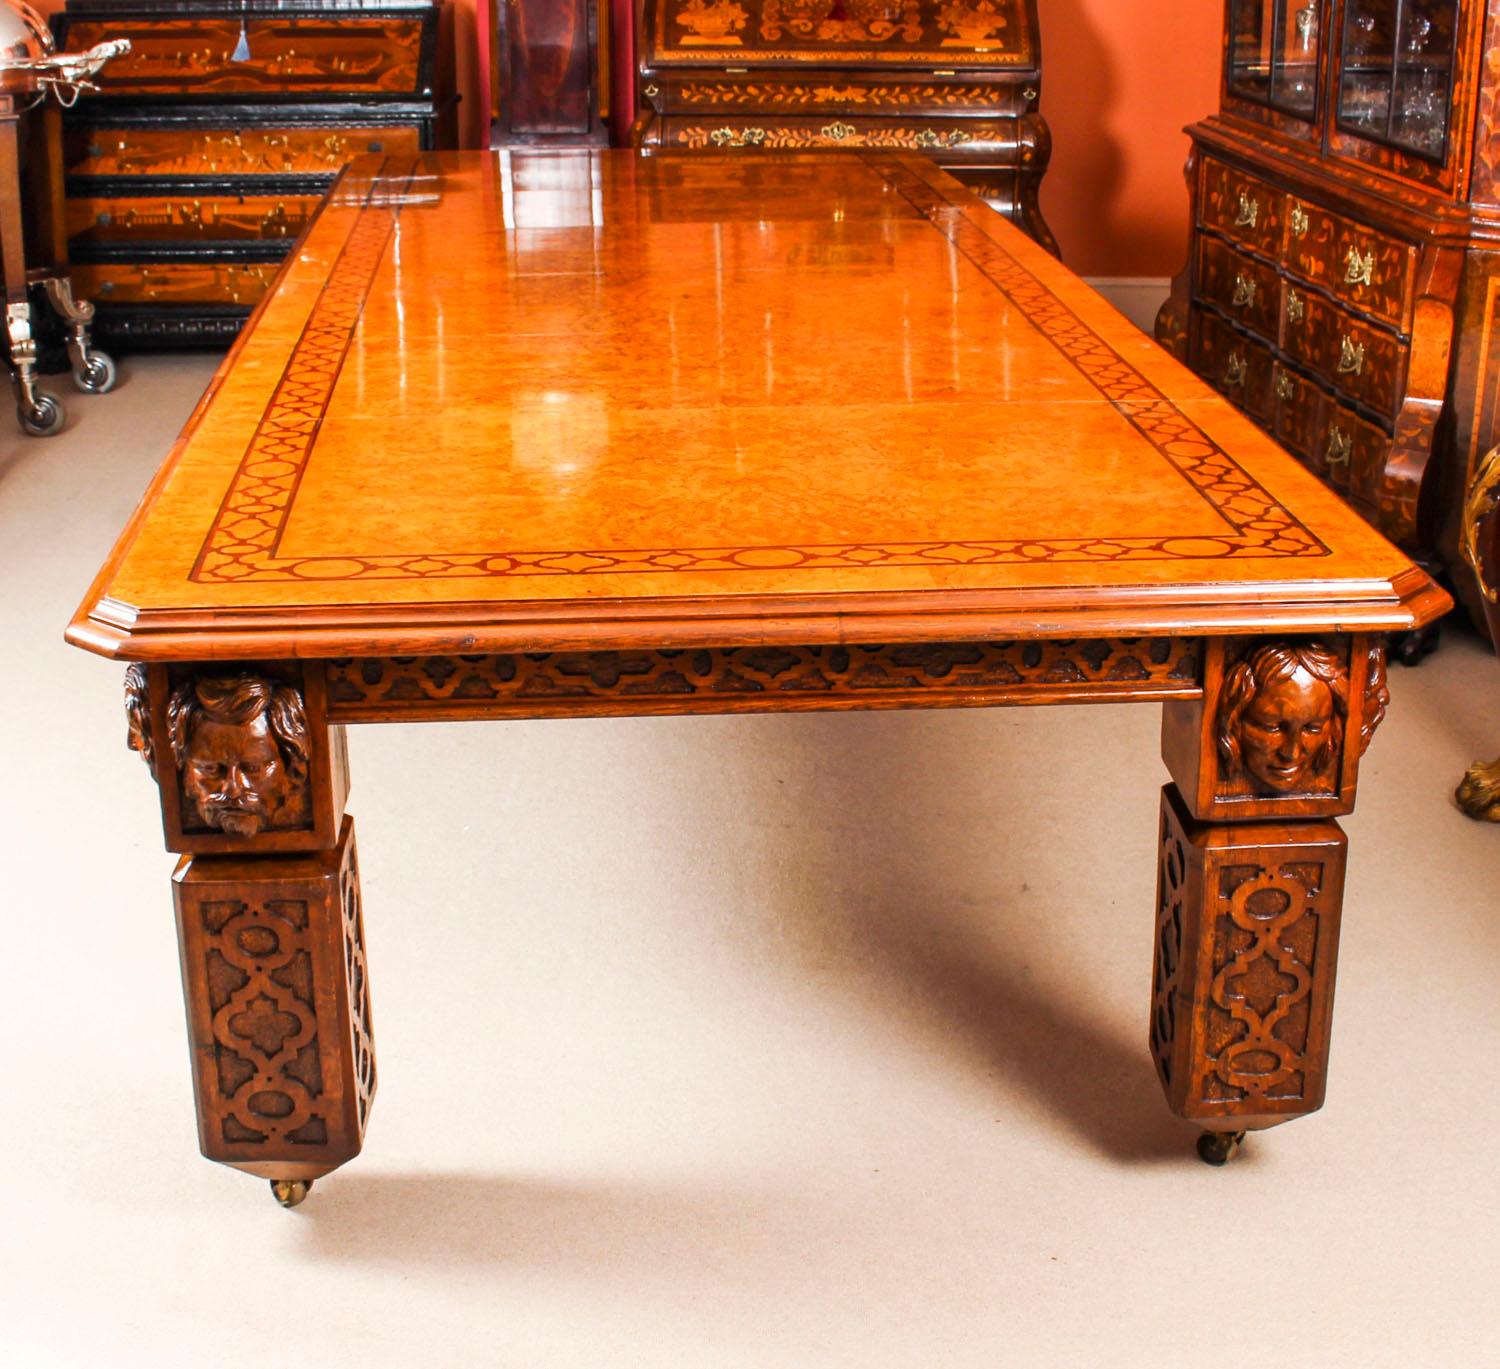 Il n'y a pas de doute sur le style et le design sophistiqué de cette table à manger à rallonge en chêne têtard de style néo-élisabéthain, datant d'environ 1850.

Le remarquable plateau rectangulaire en chêne têtard présente des coins inclinés, une